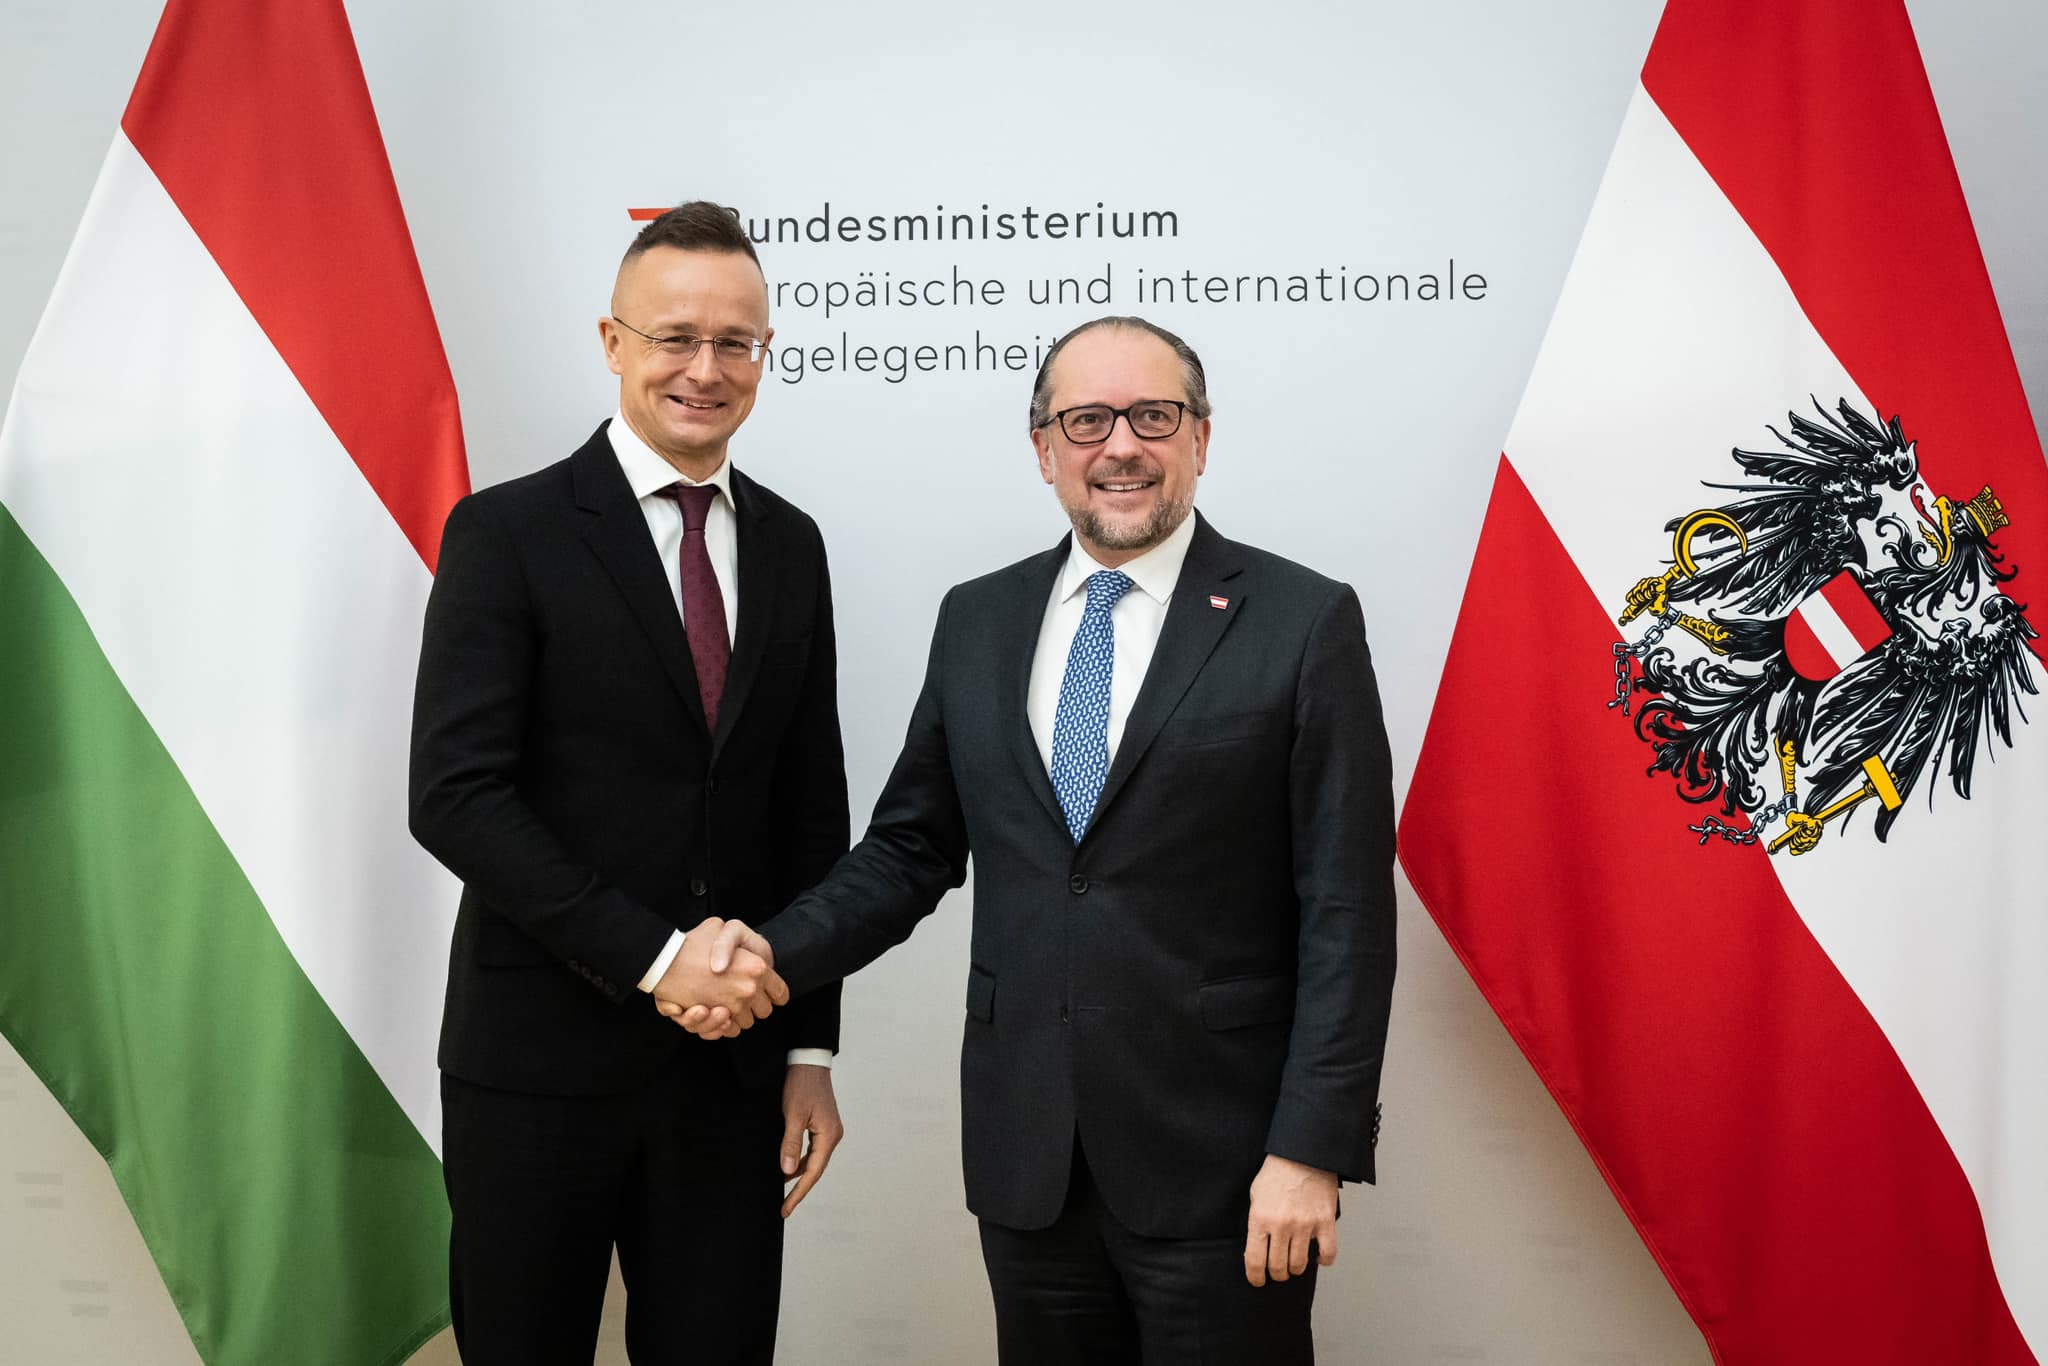 Ungarn zählt auf Österreichs Unterstützung, so Außenminister Szijjártó